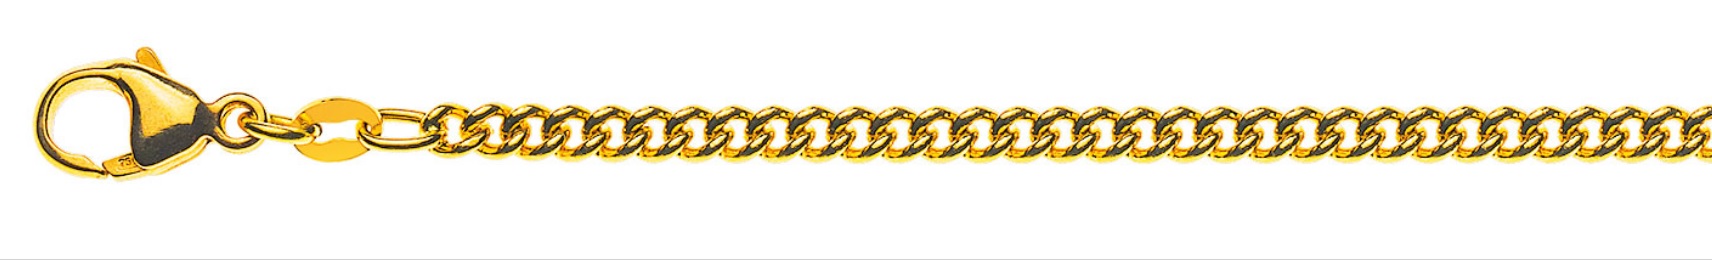 AURONOS Prestige Halskette Gelbgold 18K Rundpanzerkette 60cm 2.8mm